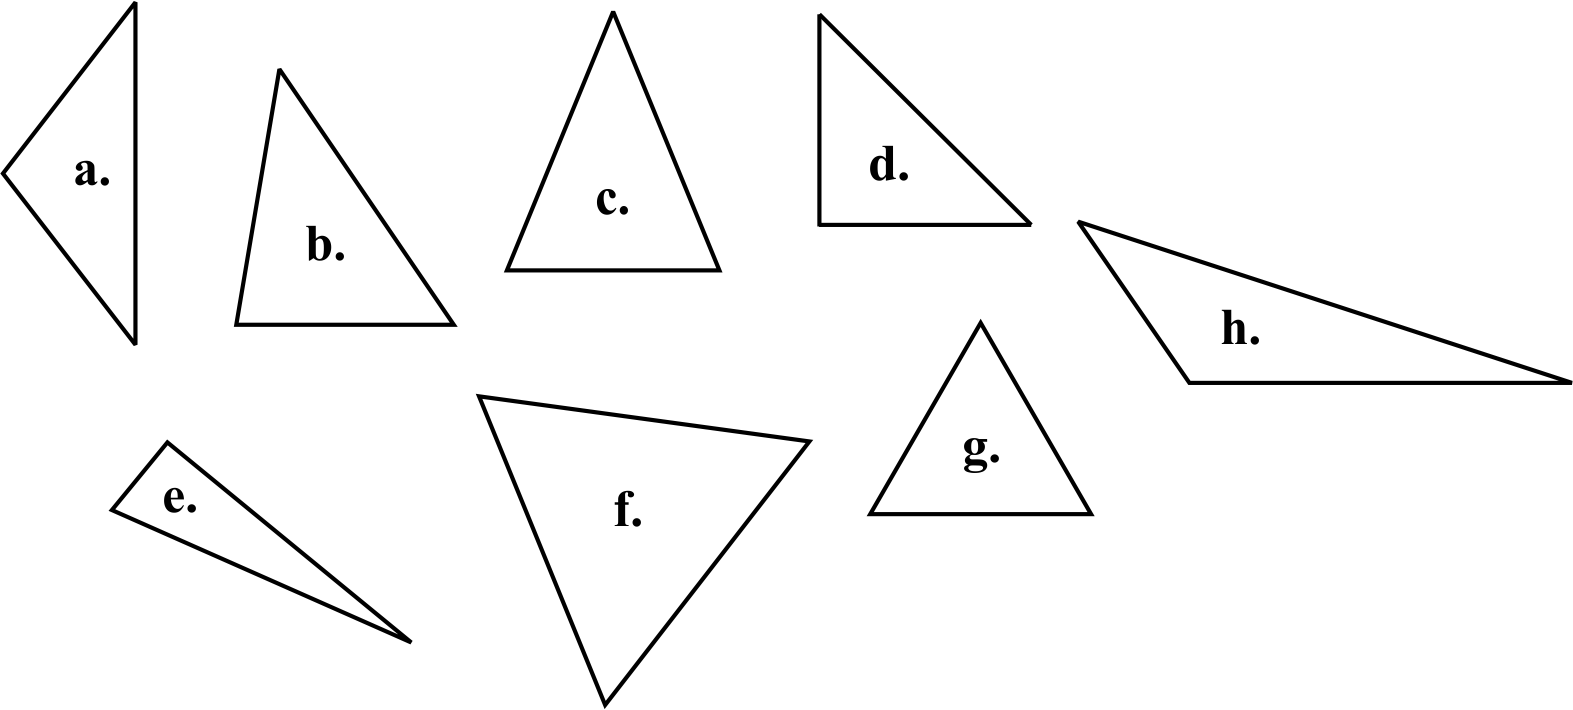 صورة بحث عن تصنيف المثلثات حسب الاضلاع والزوايا